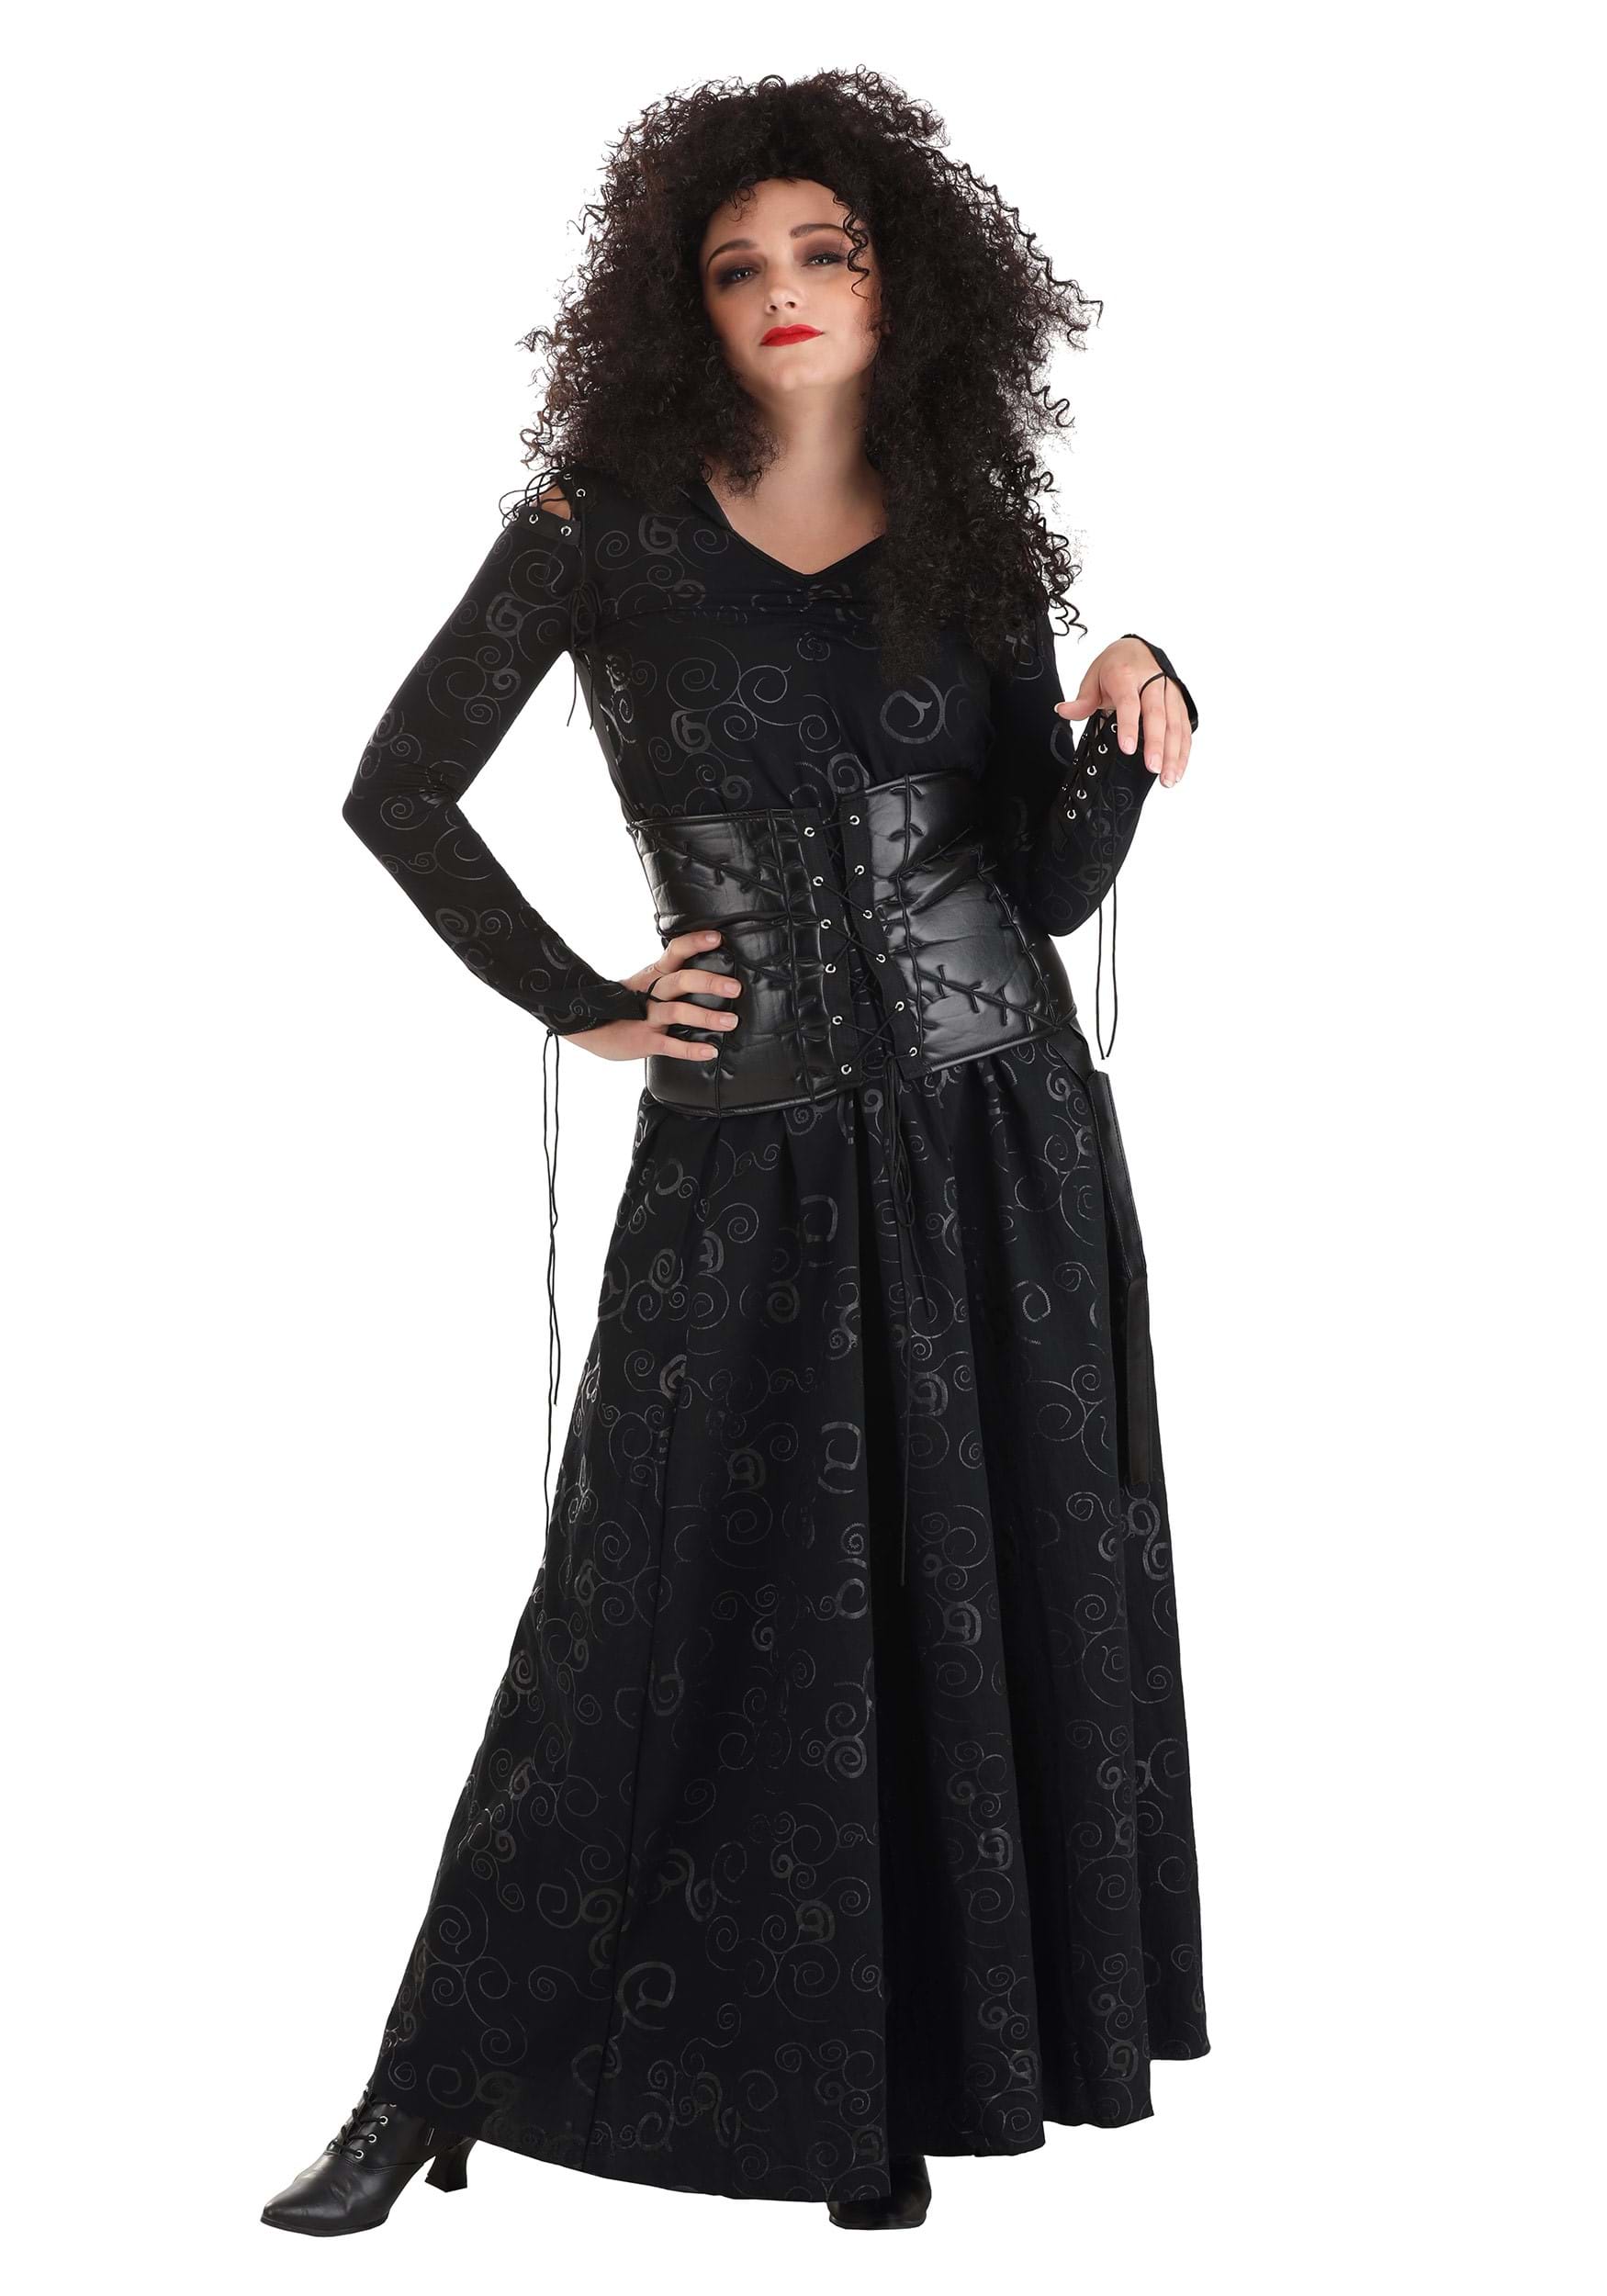 Photos - Fancy Dress Potter FUN Costumes Harry  Series Women's Deluxe Bellatrix  Cost 